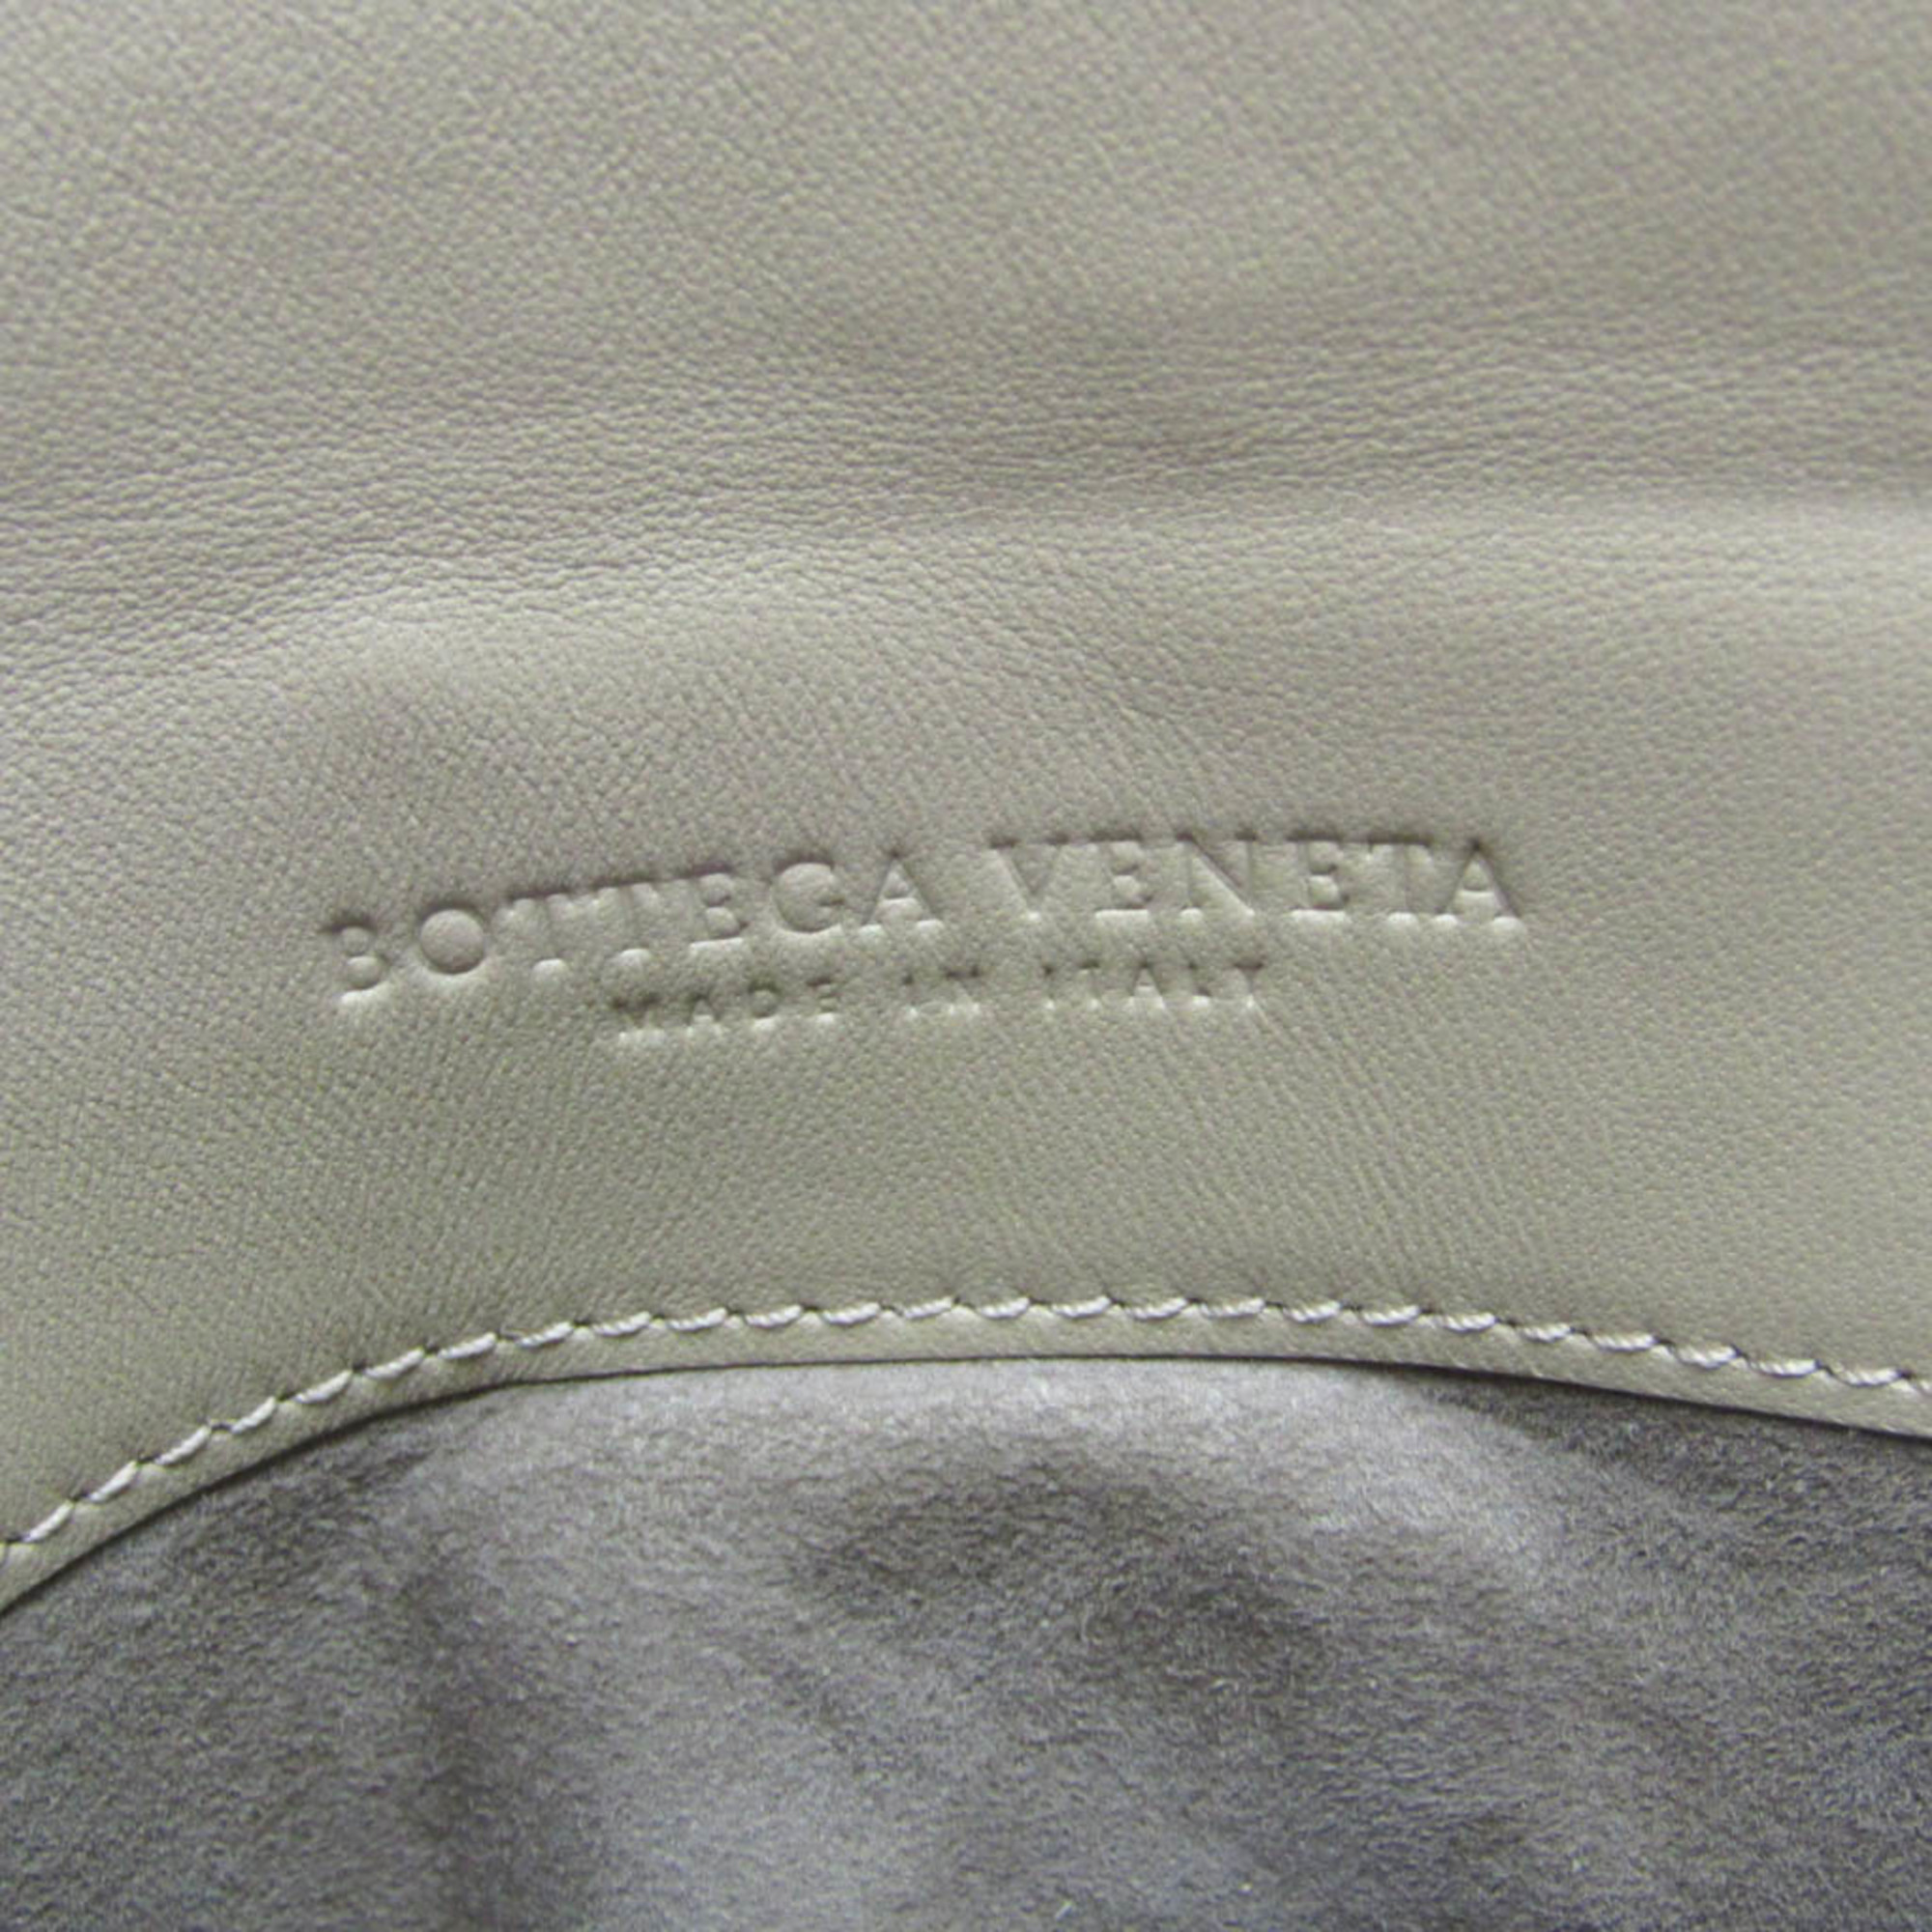 ボッテガ・ヴェネタ(Bottega Veneta) Piazza medium 498992 レディース レザー ハンドバッグ,ショルダーバッグ ブラウン,ライトベージュ,オフホワイト